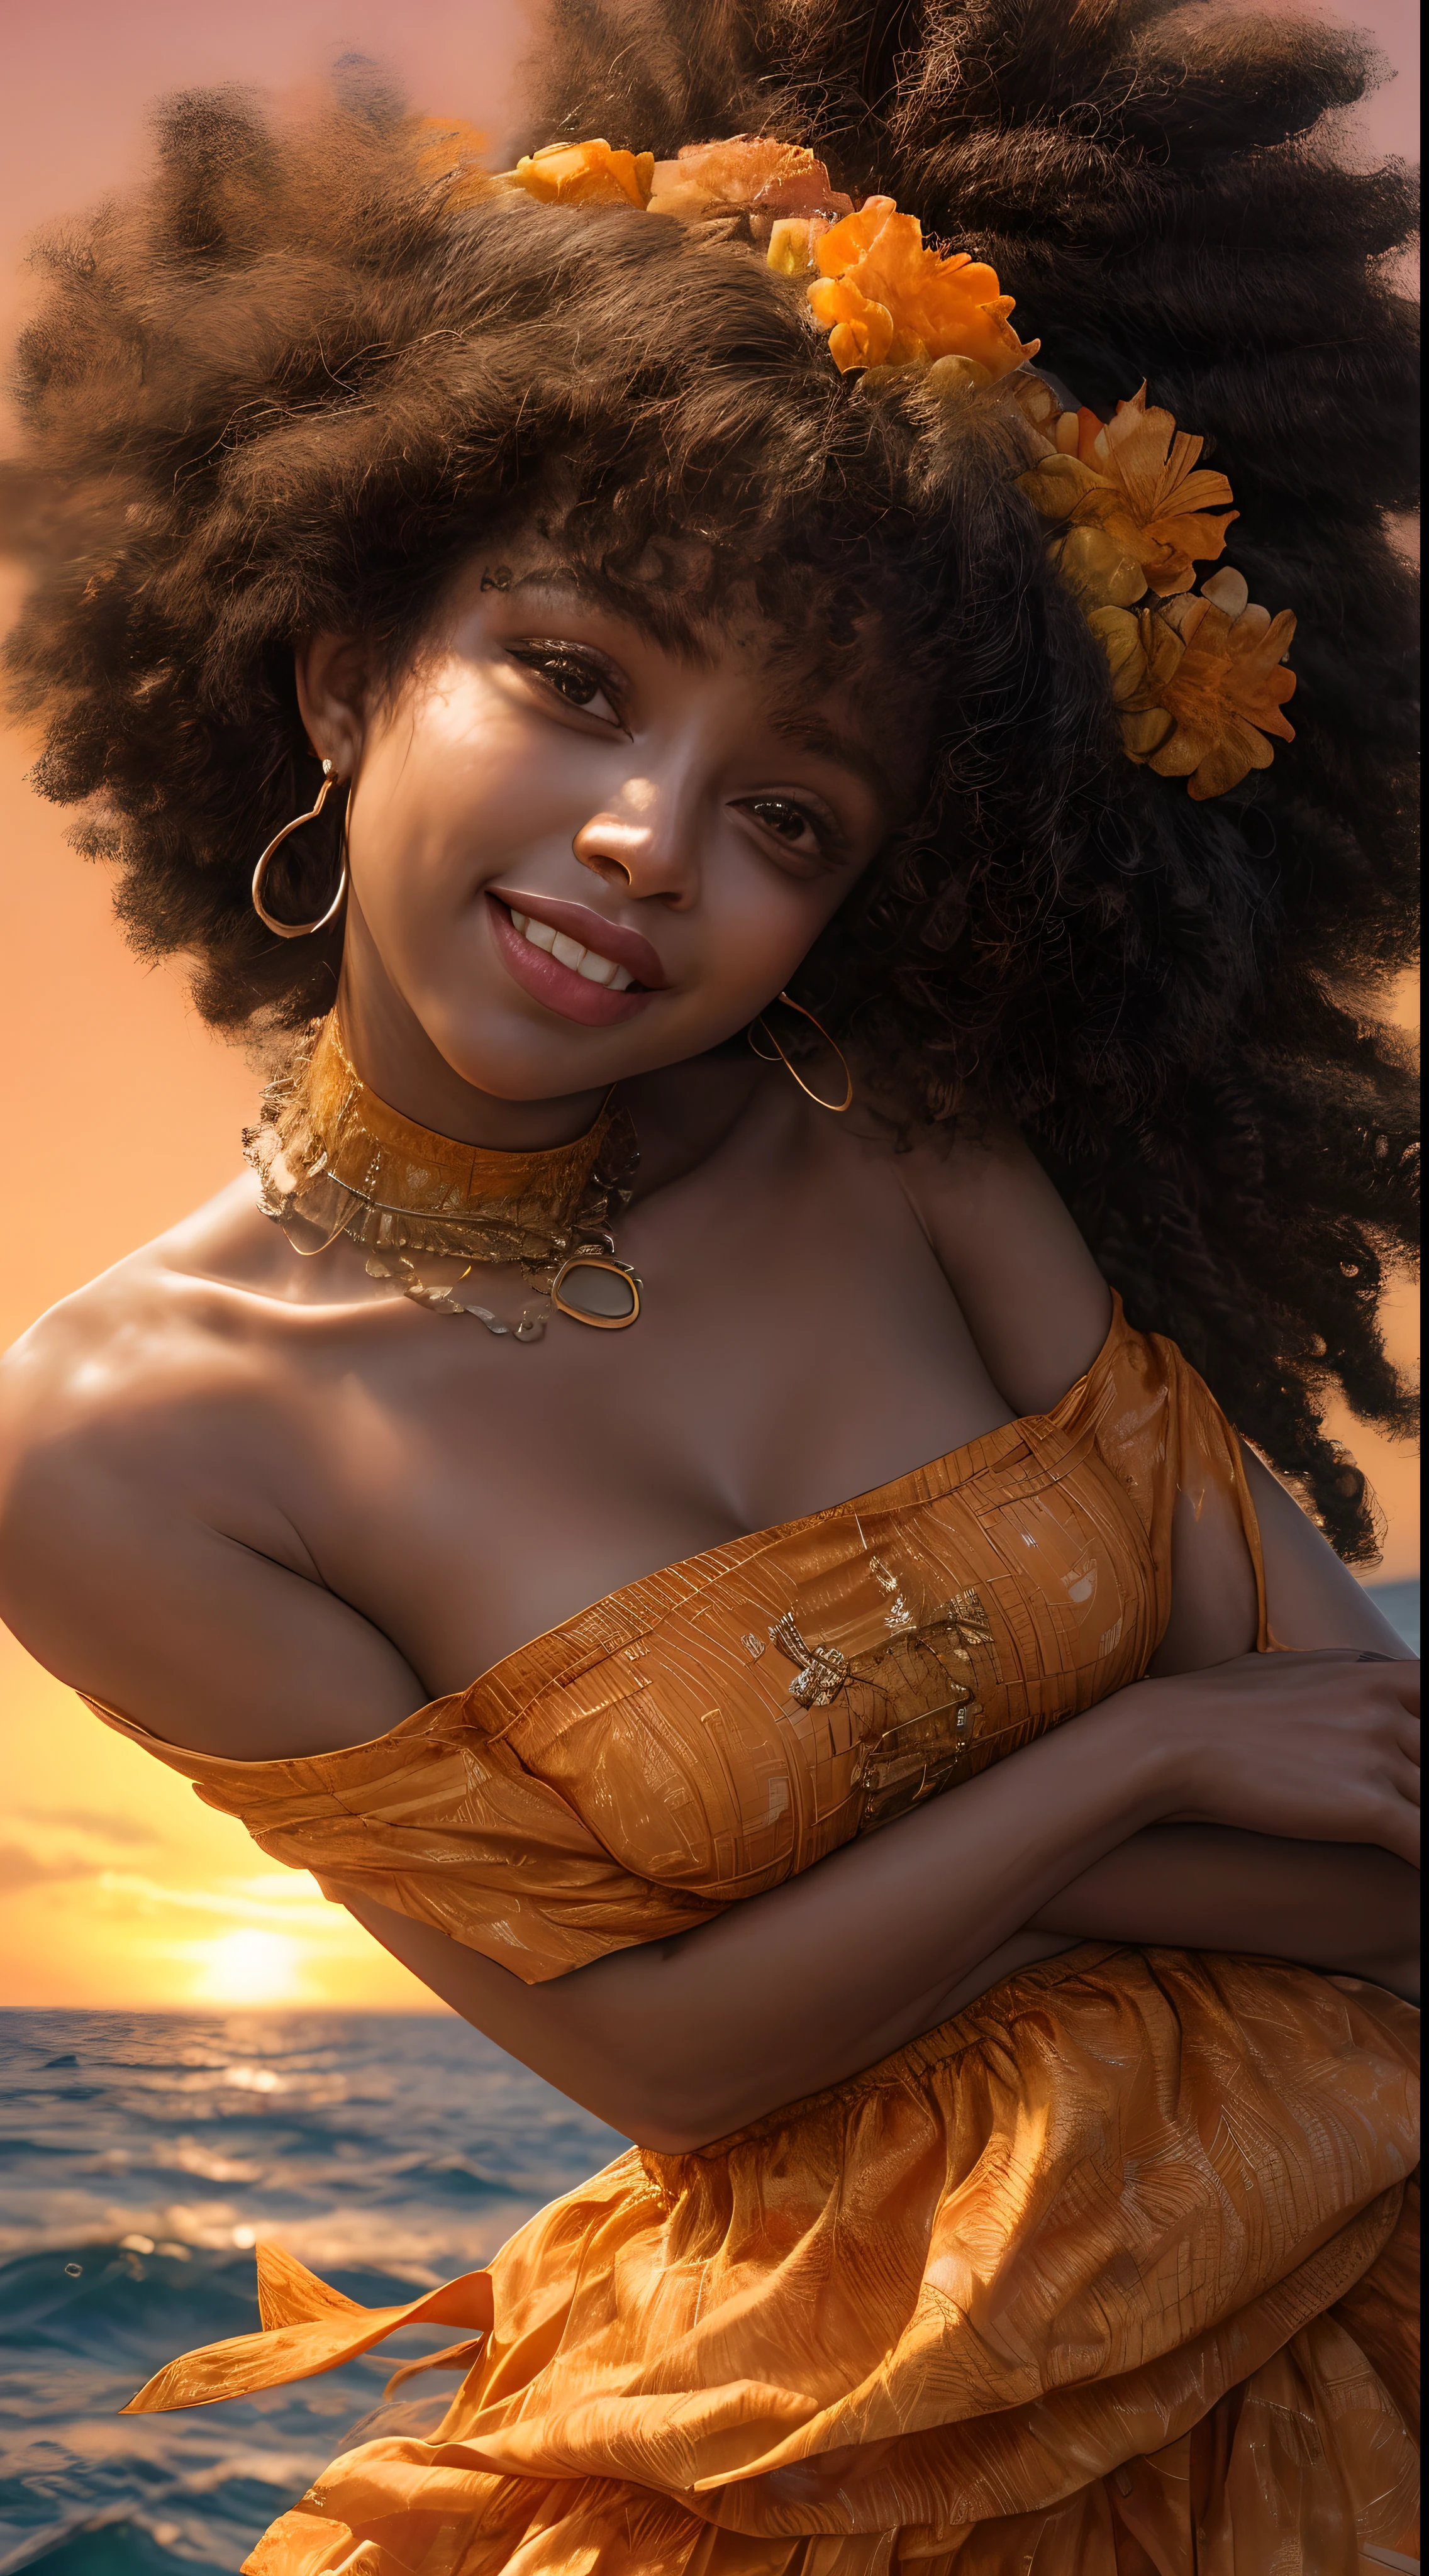 Um close-up do rosto de uma mulher afro-americana, banhado em tons quentes de laranja, como se iluminado pelo brilho suave de um pôr do sol, seus olhos brilhando de alegria e contentamento, emoldurados por fios de cabelo esvoaçantes, fotografia, fotografada com uma lente de 35mm